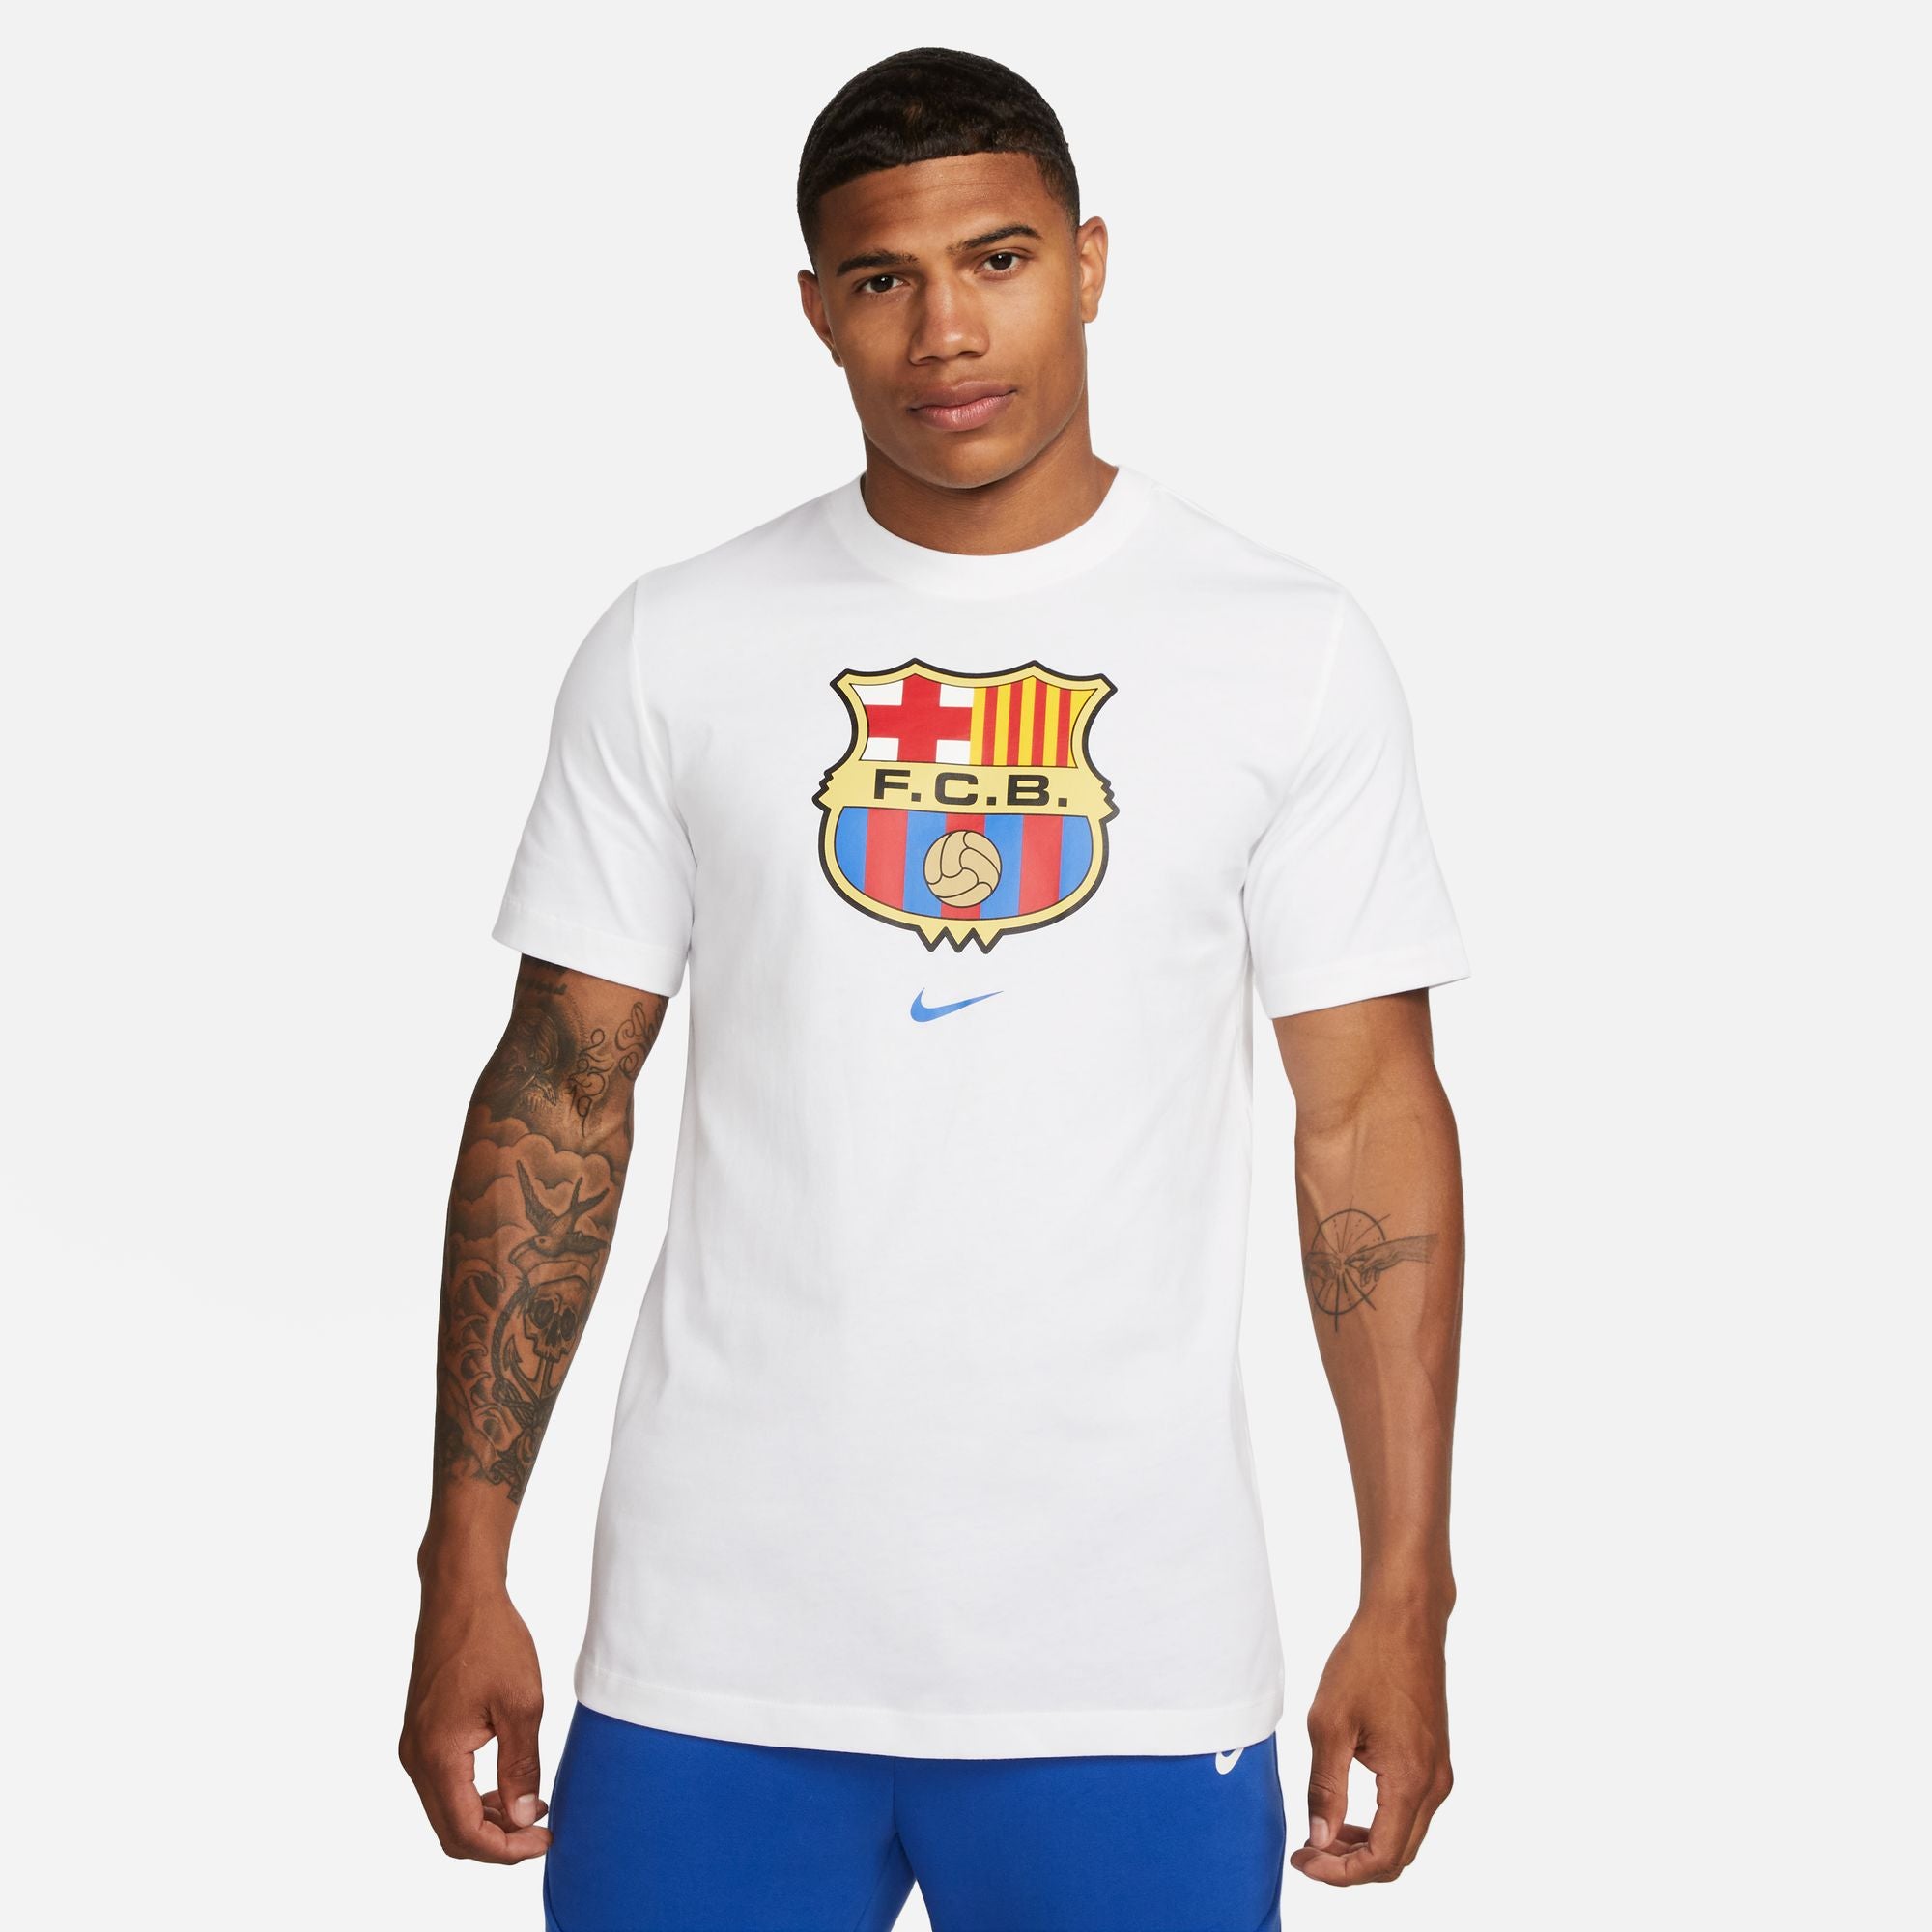 Nike Men's FC Barcelona Crest Tee White